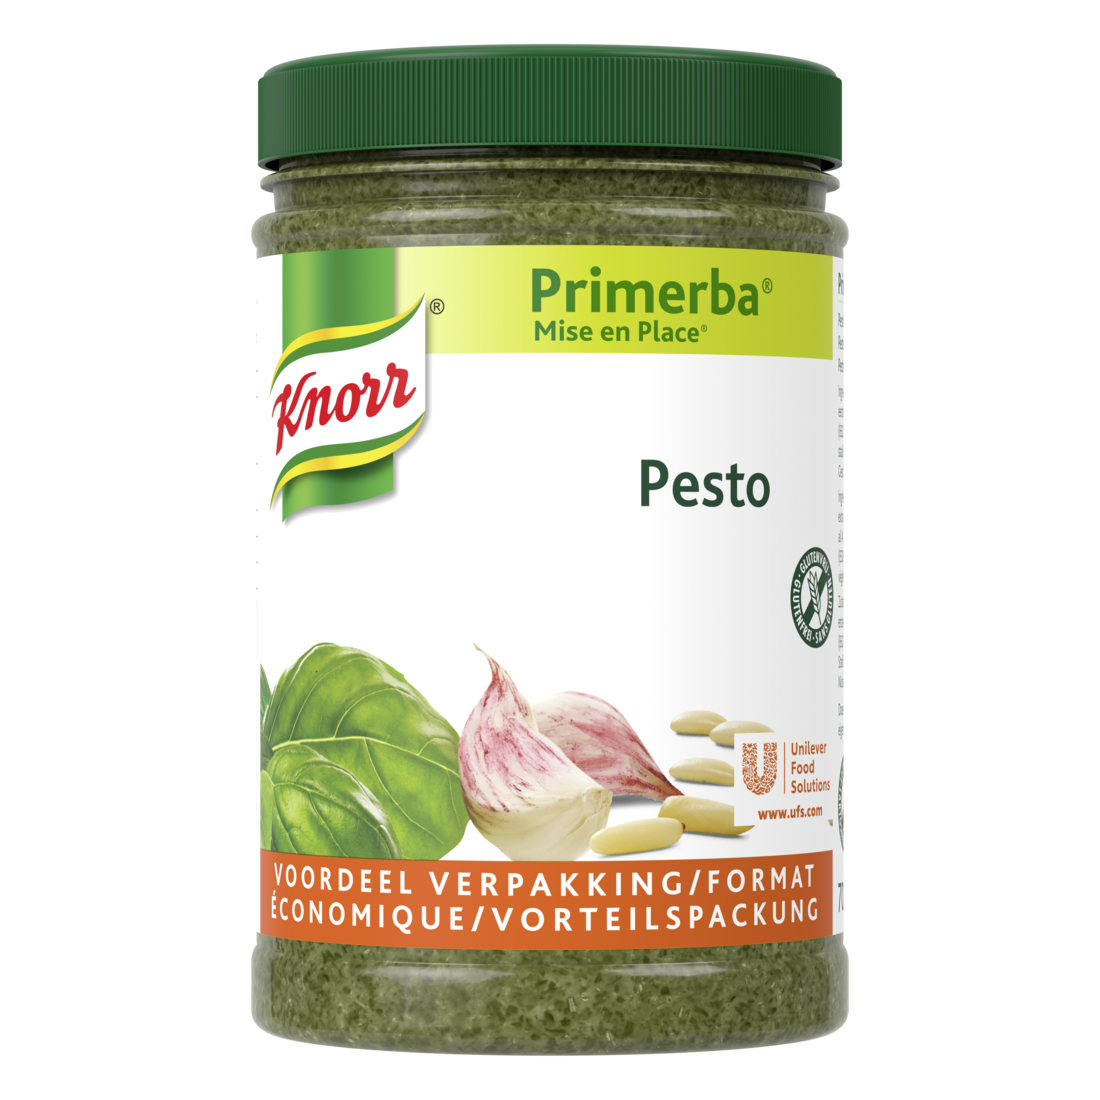 Knorr Mise en place Pesto vert 700g - Knorr Mise en place Primerba personnalise et sublime vos plats.